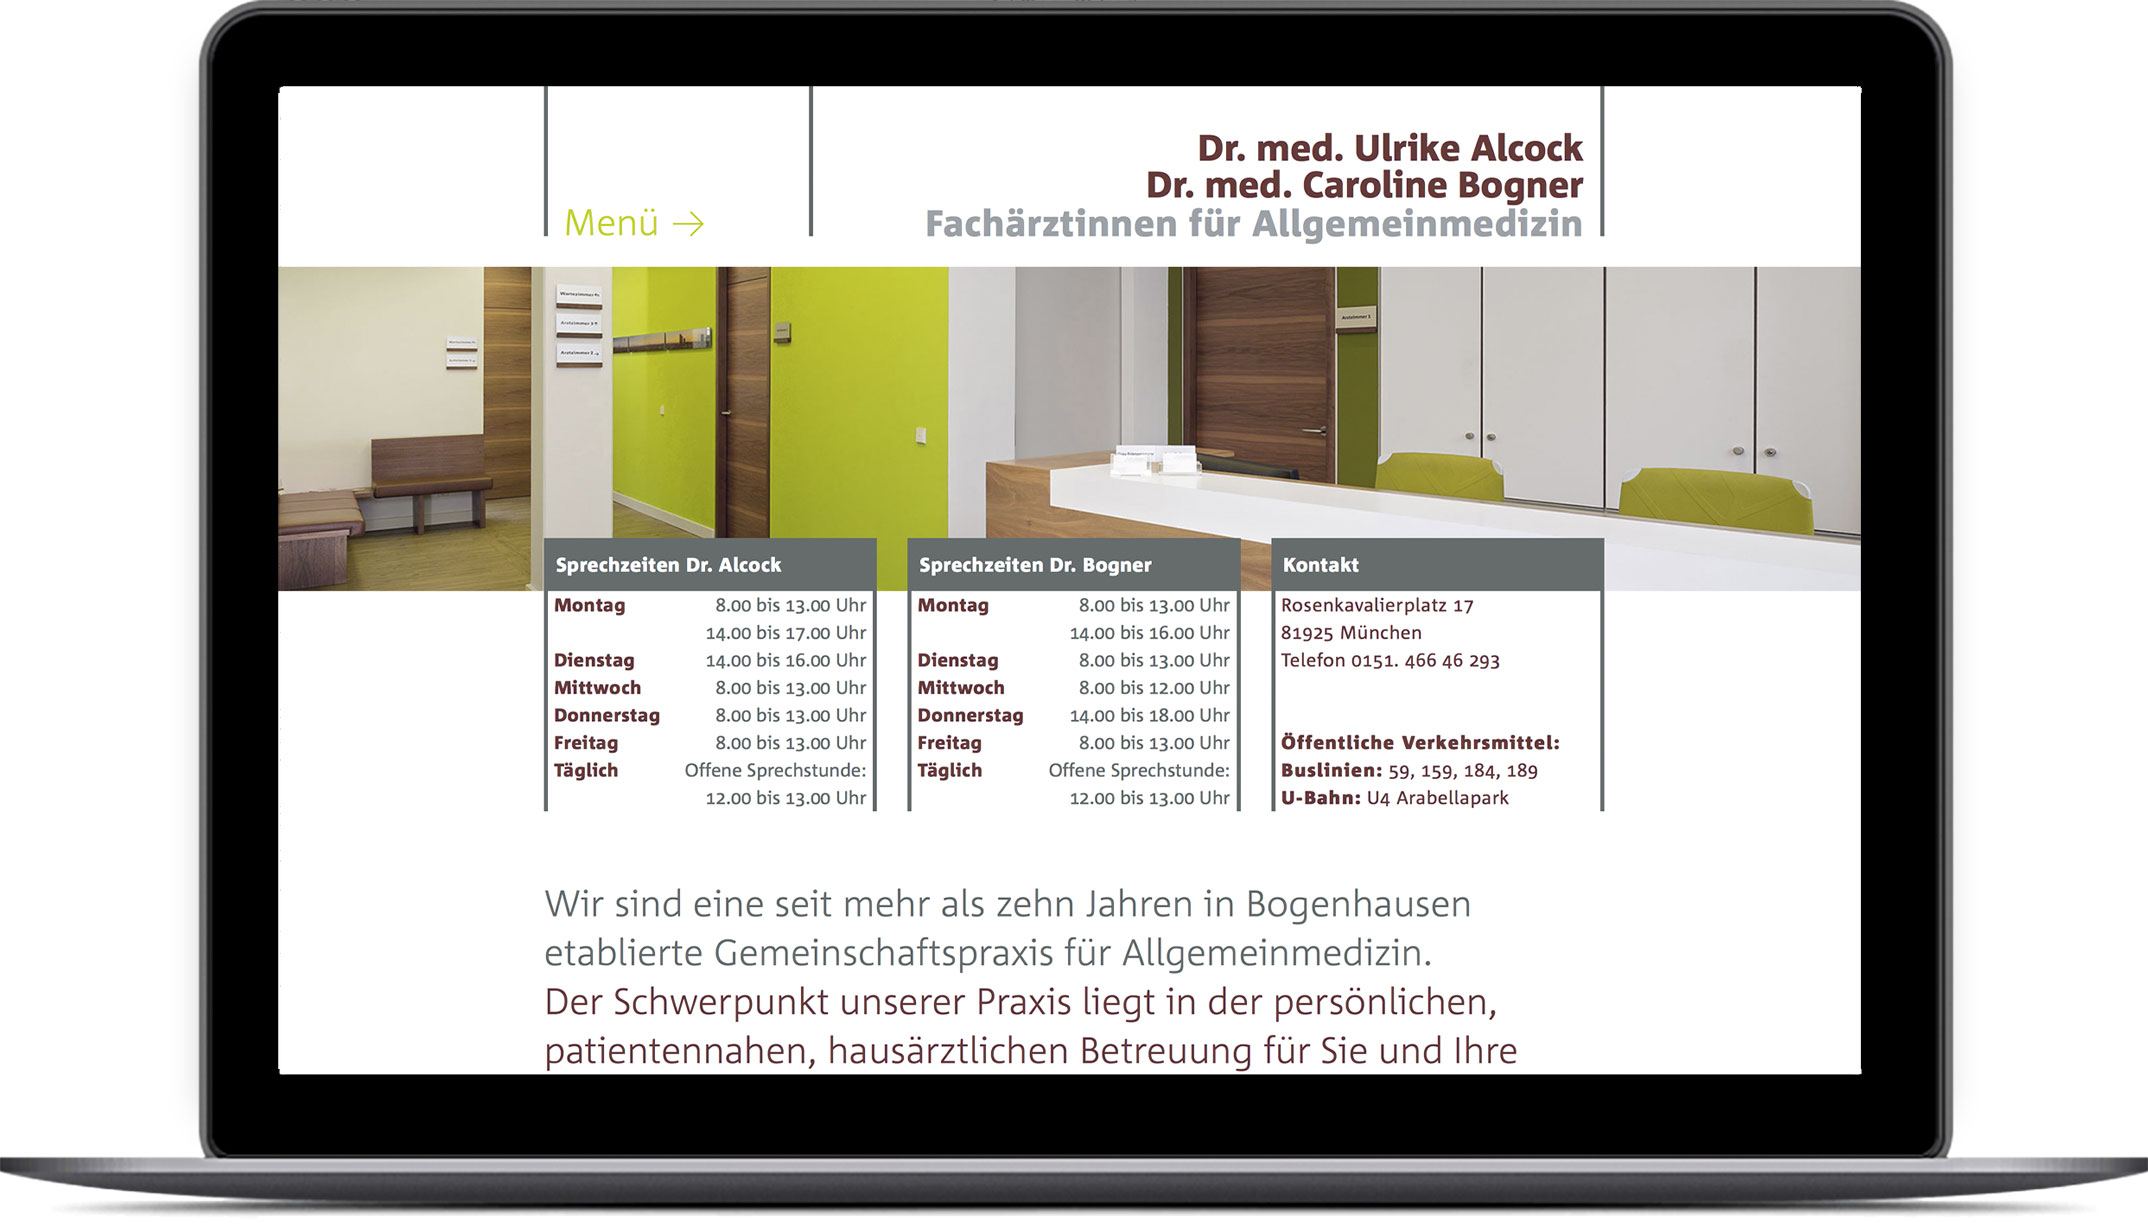 Startseite – Corporate Website Dres. med. Alcock und Bogner Allgemeinmedizin München